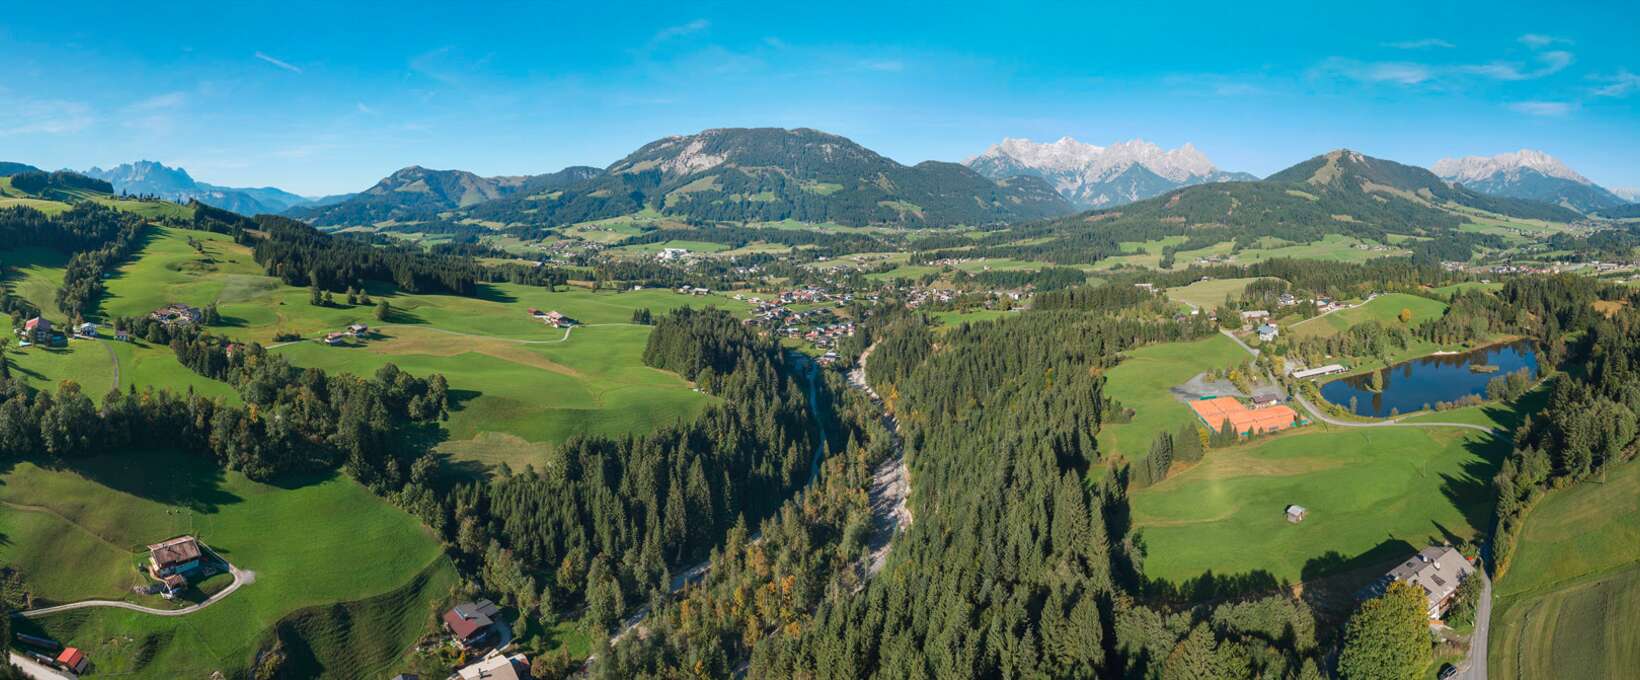 Panorama Pillerseetal im Sommer | Fieberbrunn | © Kitzbüheler Alpen Marketing GmbH | Simon Oberleitner